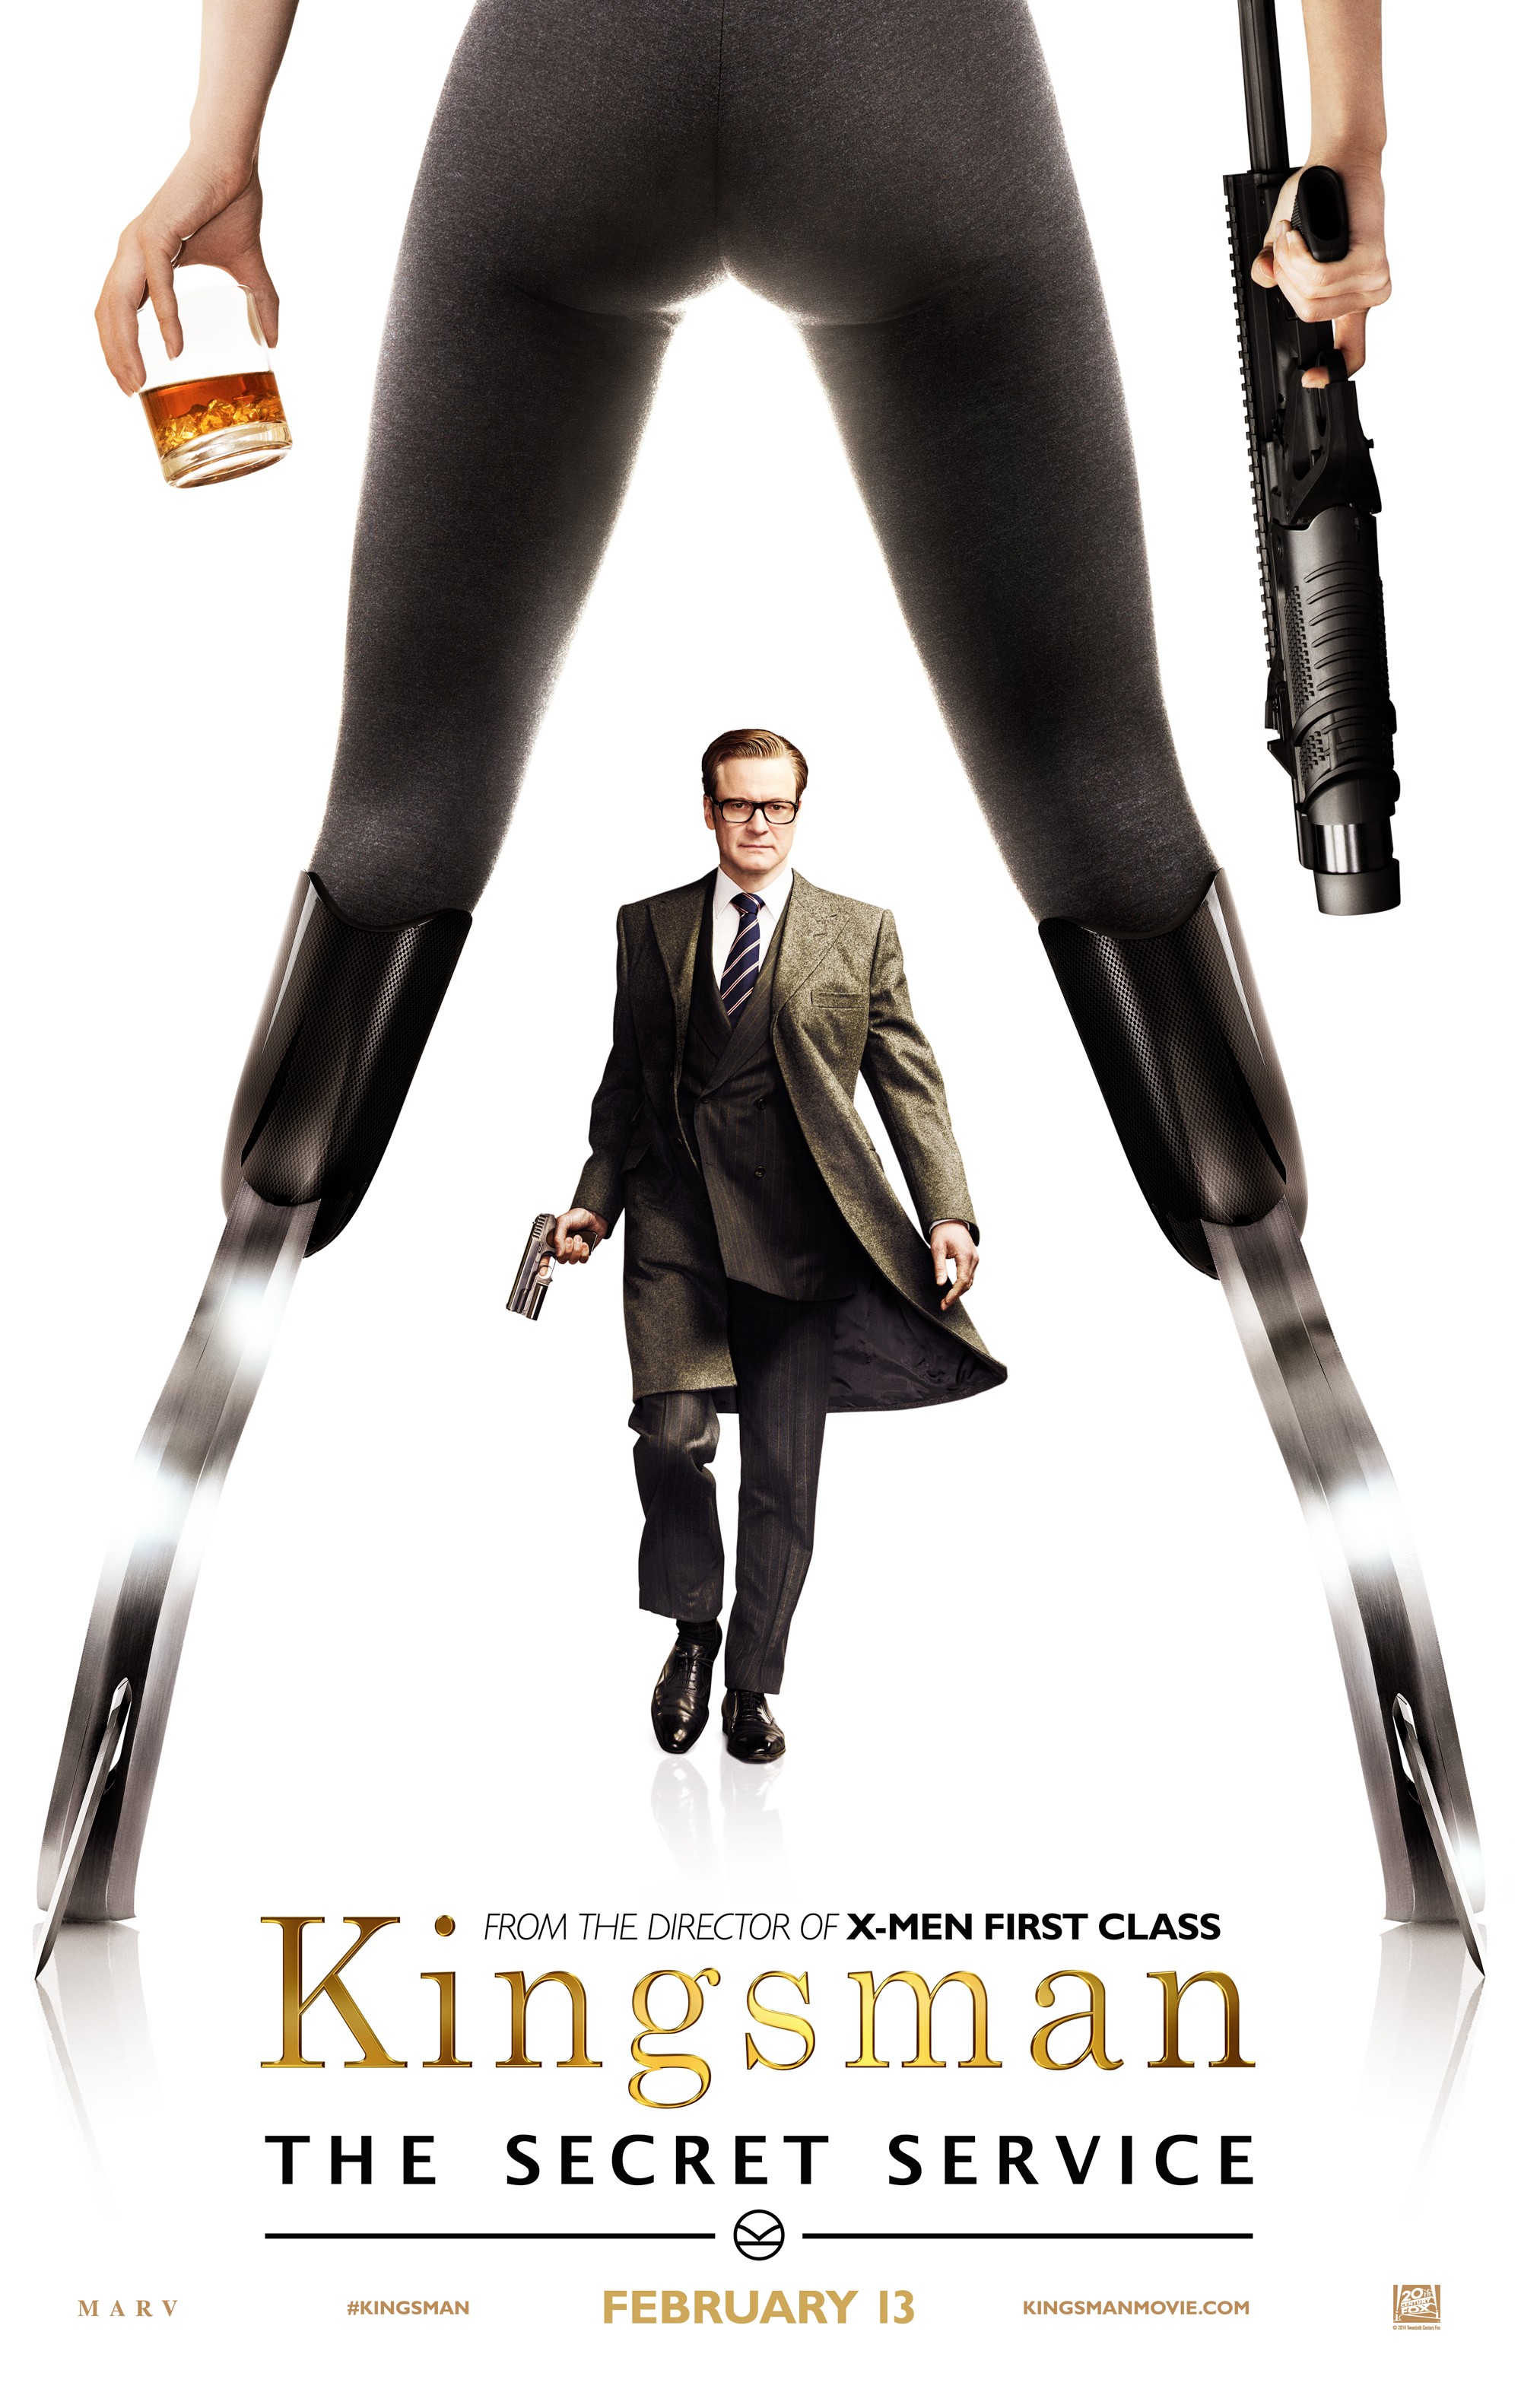  Kingsman - The Secret Service : Movies & TV